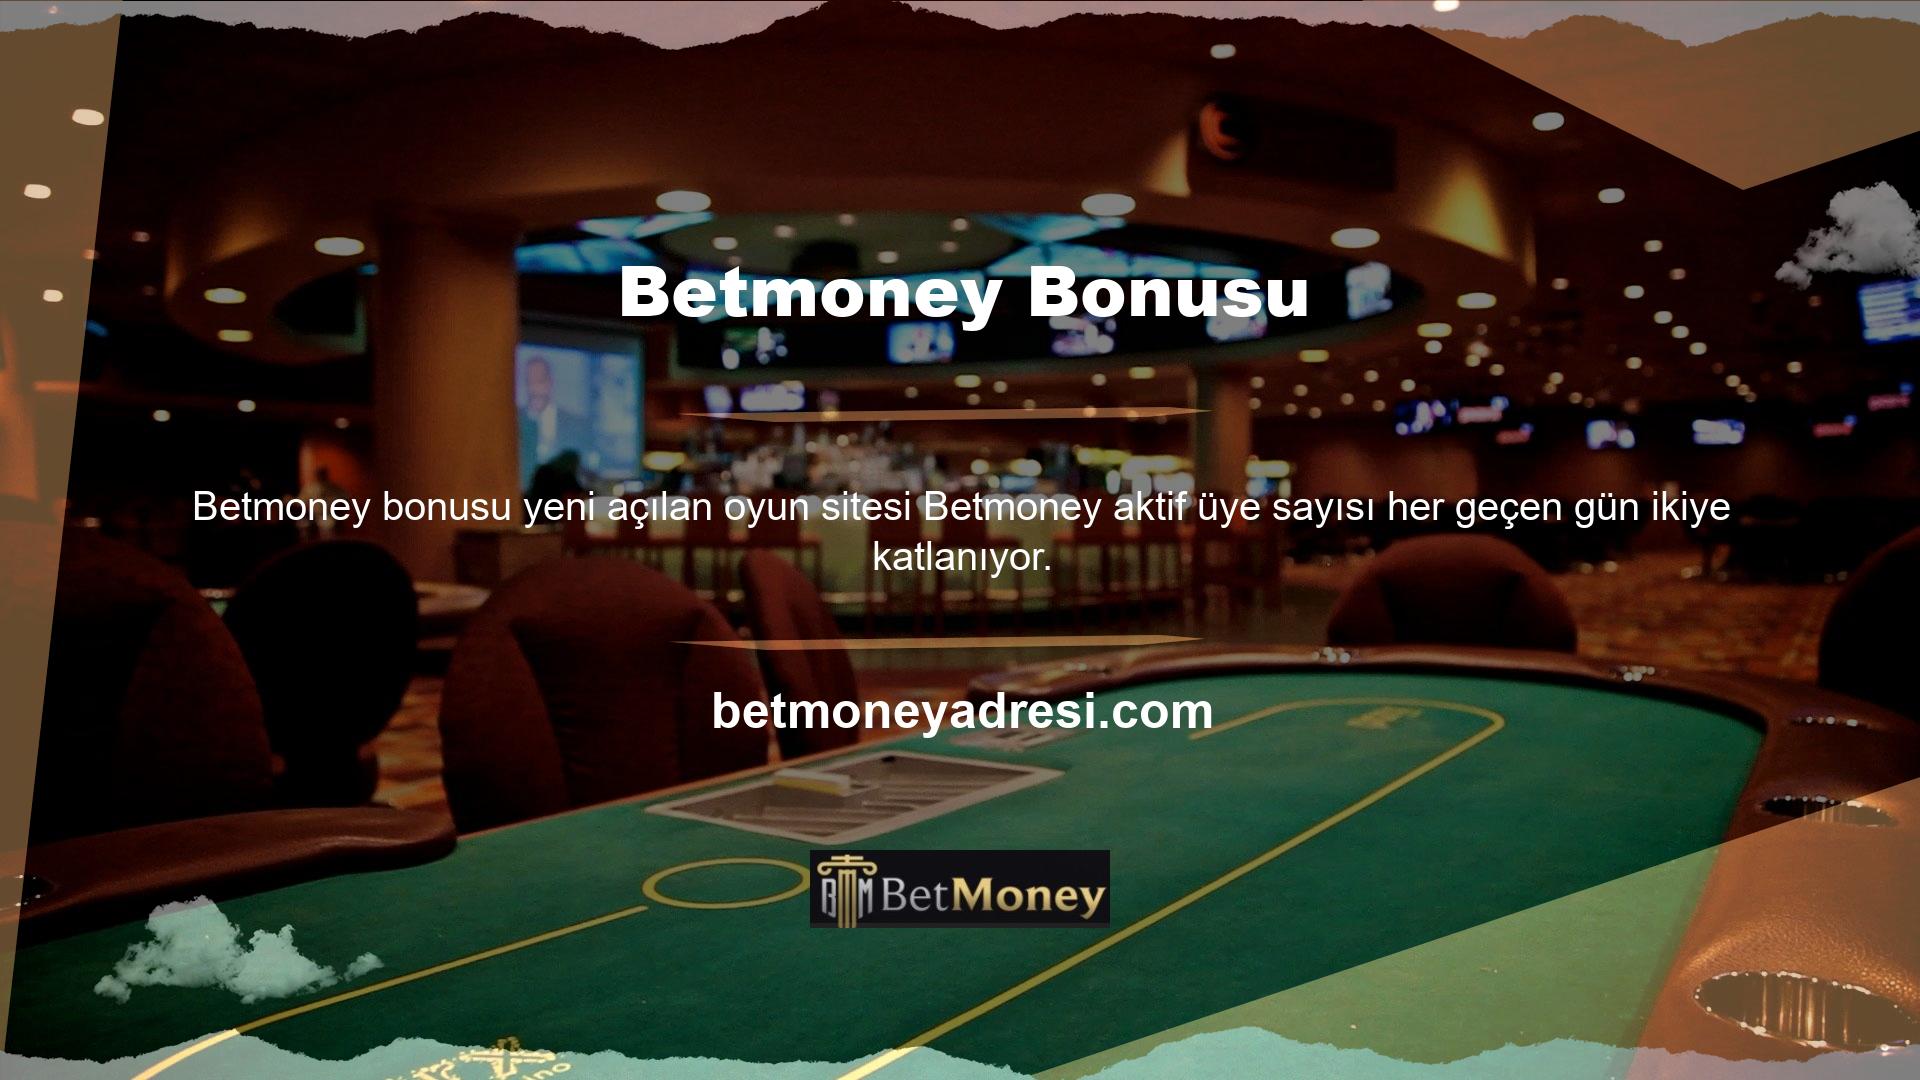 Betmoney web sitesi canlı casino, canlı casino, spor bahisleri, sanal casino ve E-spor dahil olmak üzere çeşitli oyun kategorileri sunmaktadır